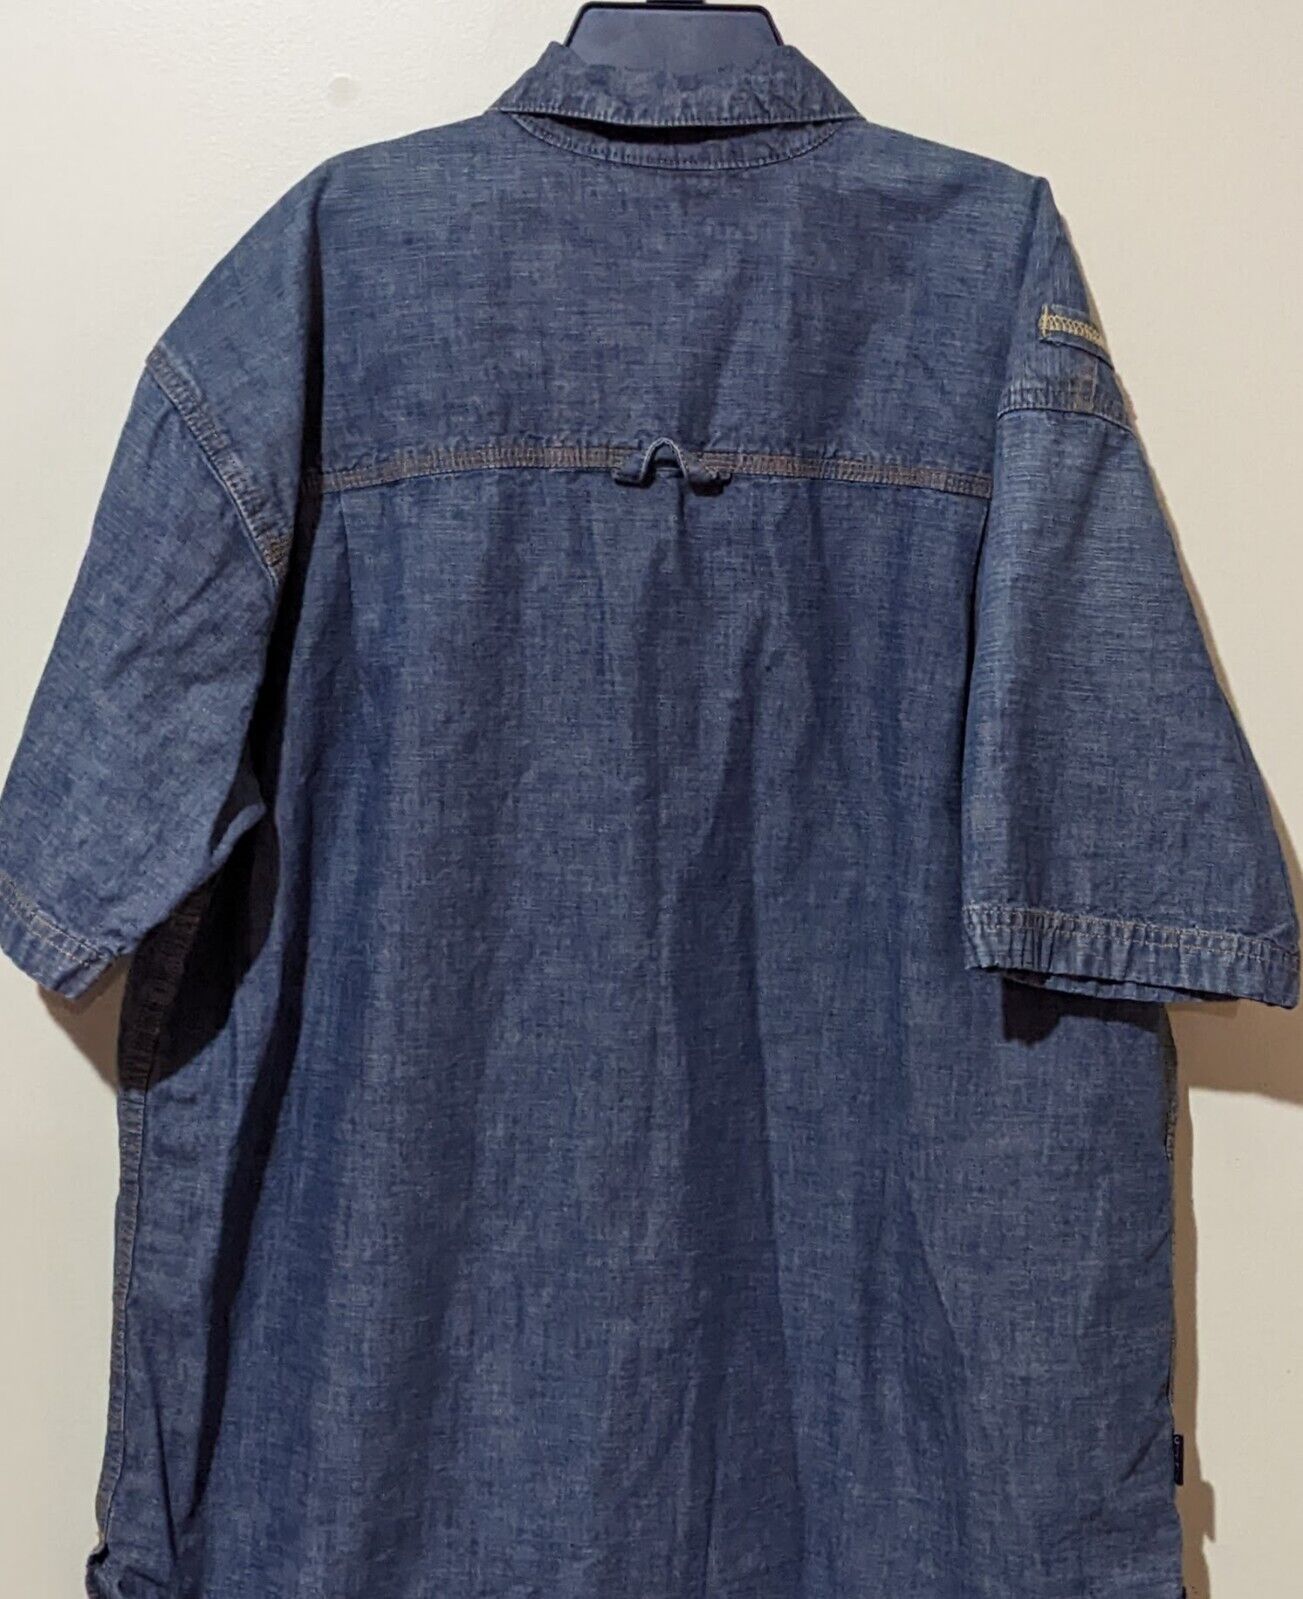 Sean John Men's Denim Blue Shirt Size Large - image 6